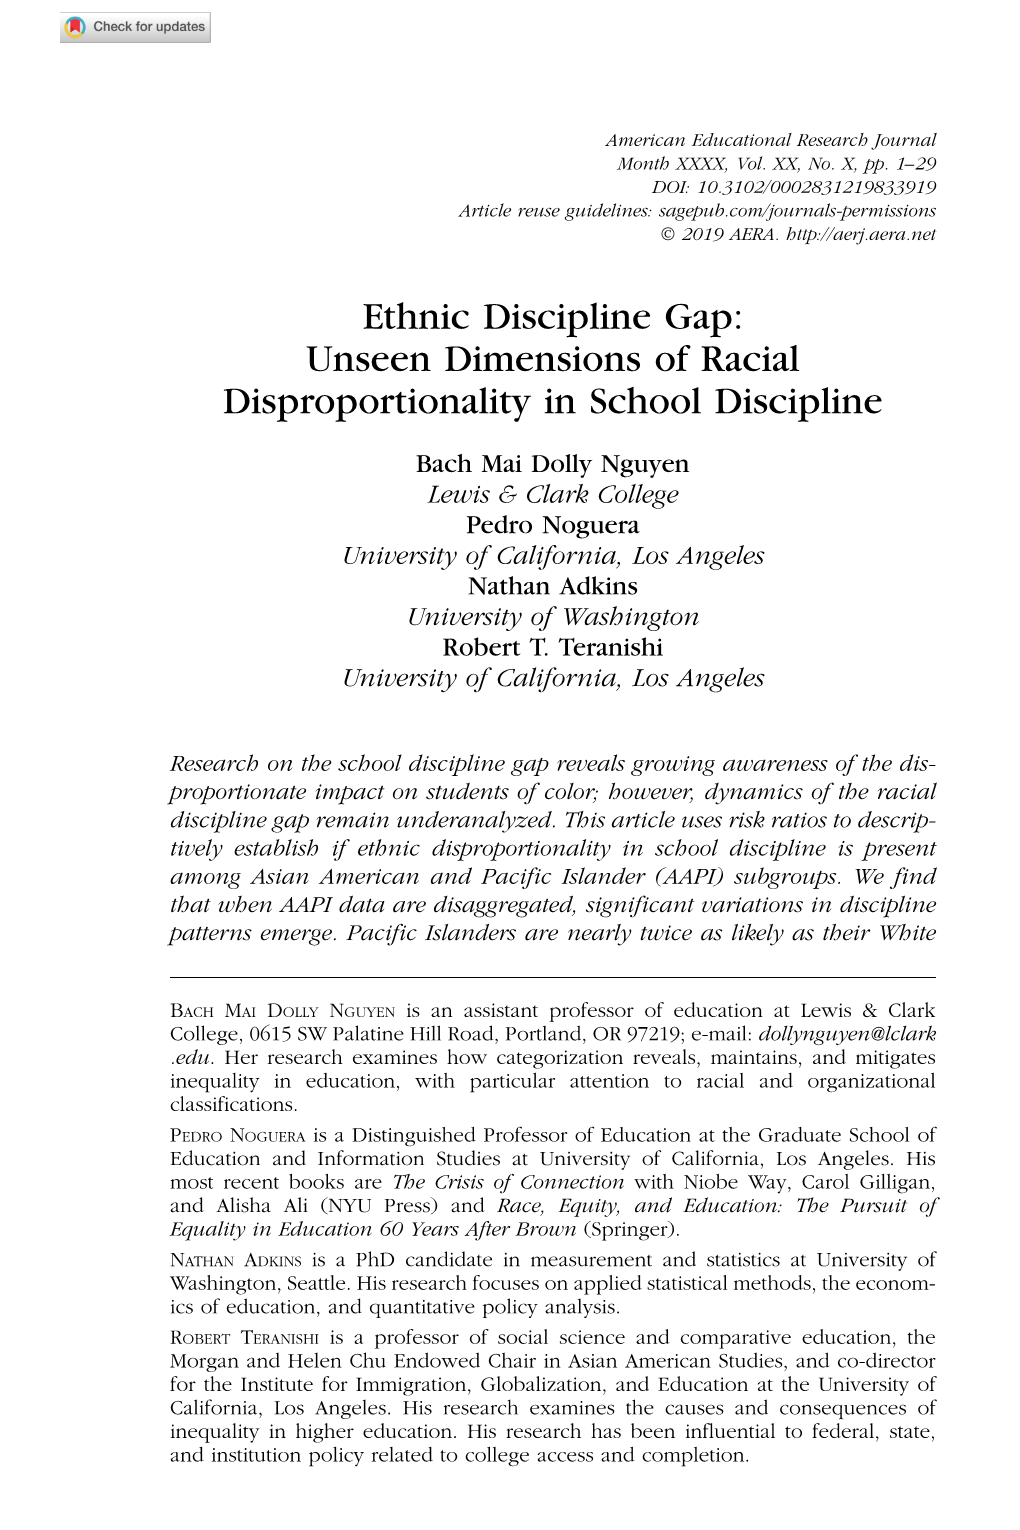 Ethnic Discipline Gap: Unseen Dimensions of Racial Disproportionality in School Discipline